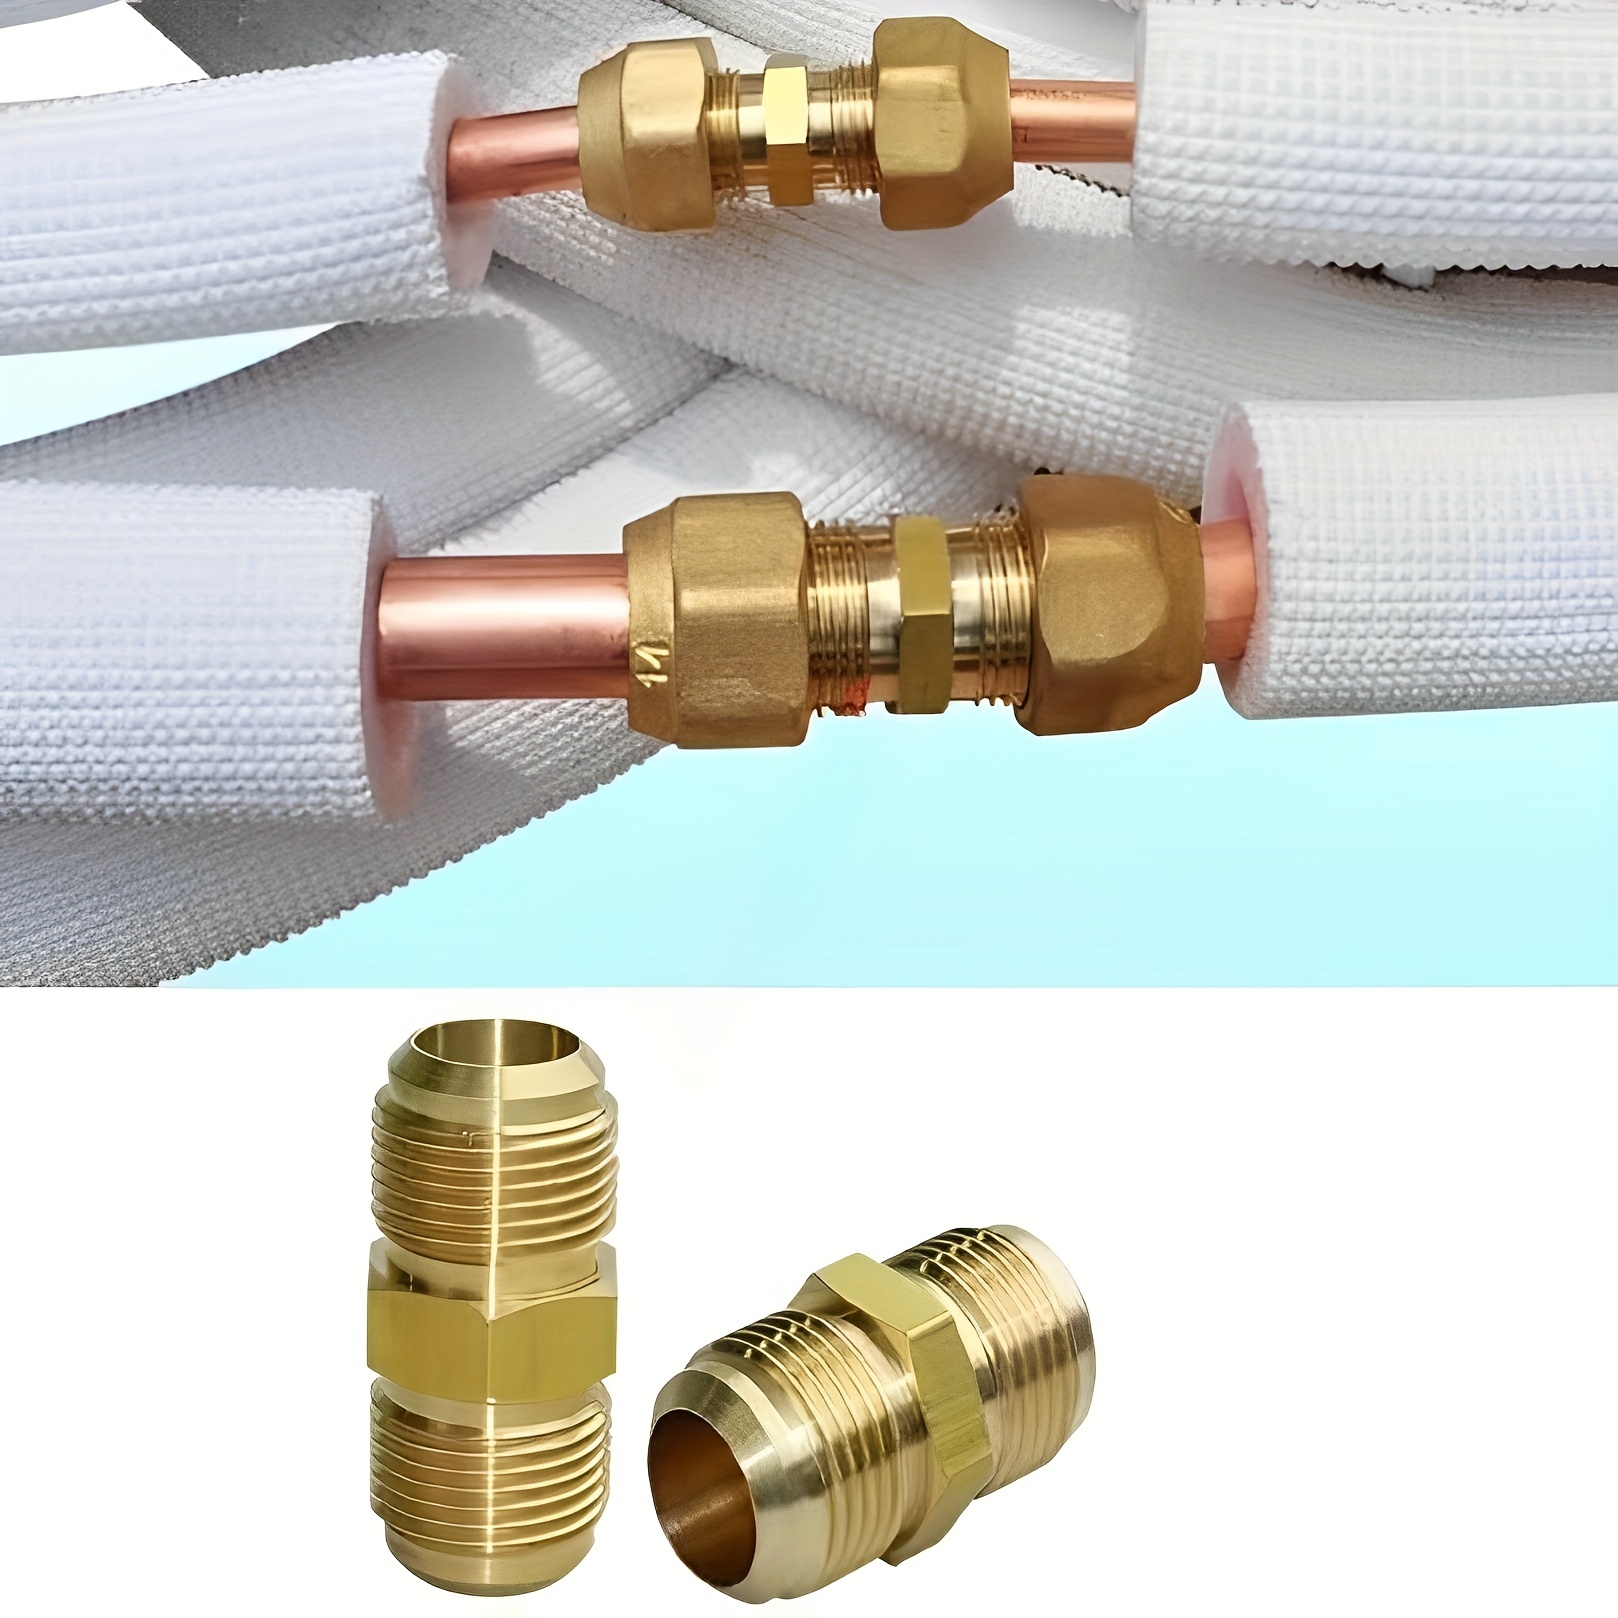 IIVVERR 0.315 inx0.250 in tubo aire acondicionado cobre reductor recto  accesorios 2pcs (0.315 inx0.250 in tubo Acondicionador de aire reductor de